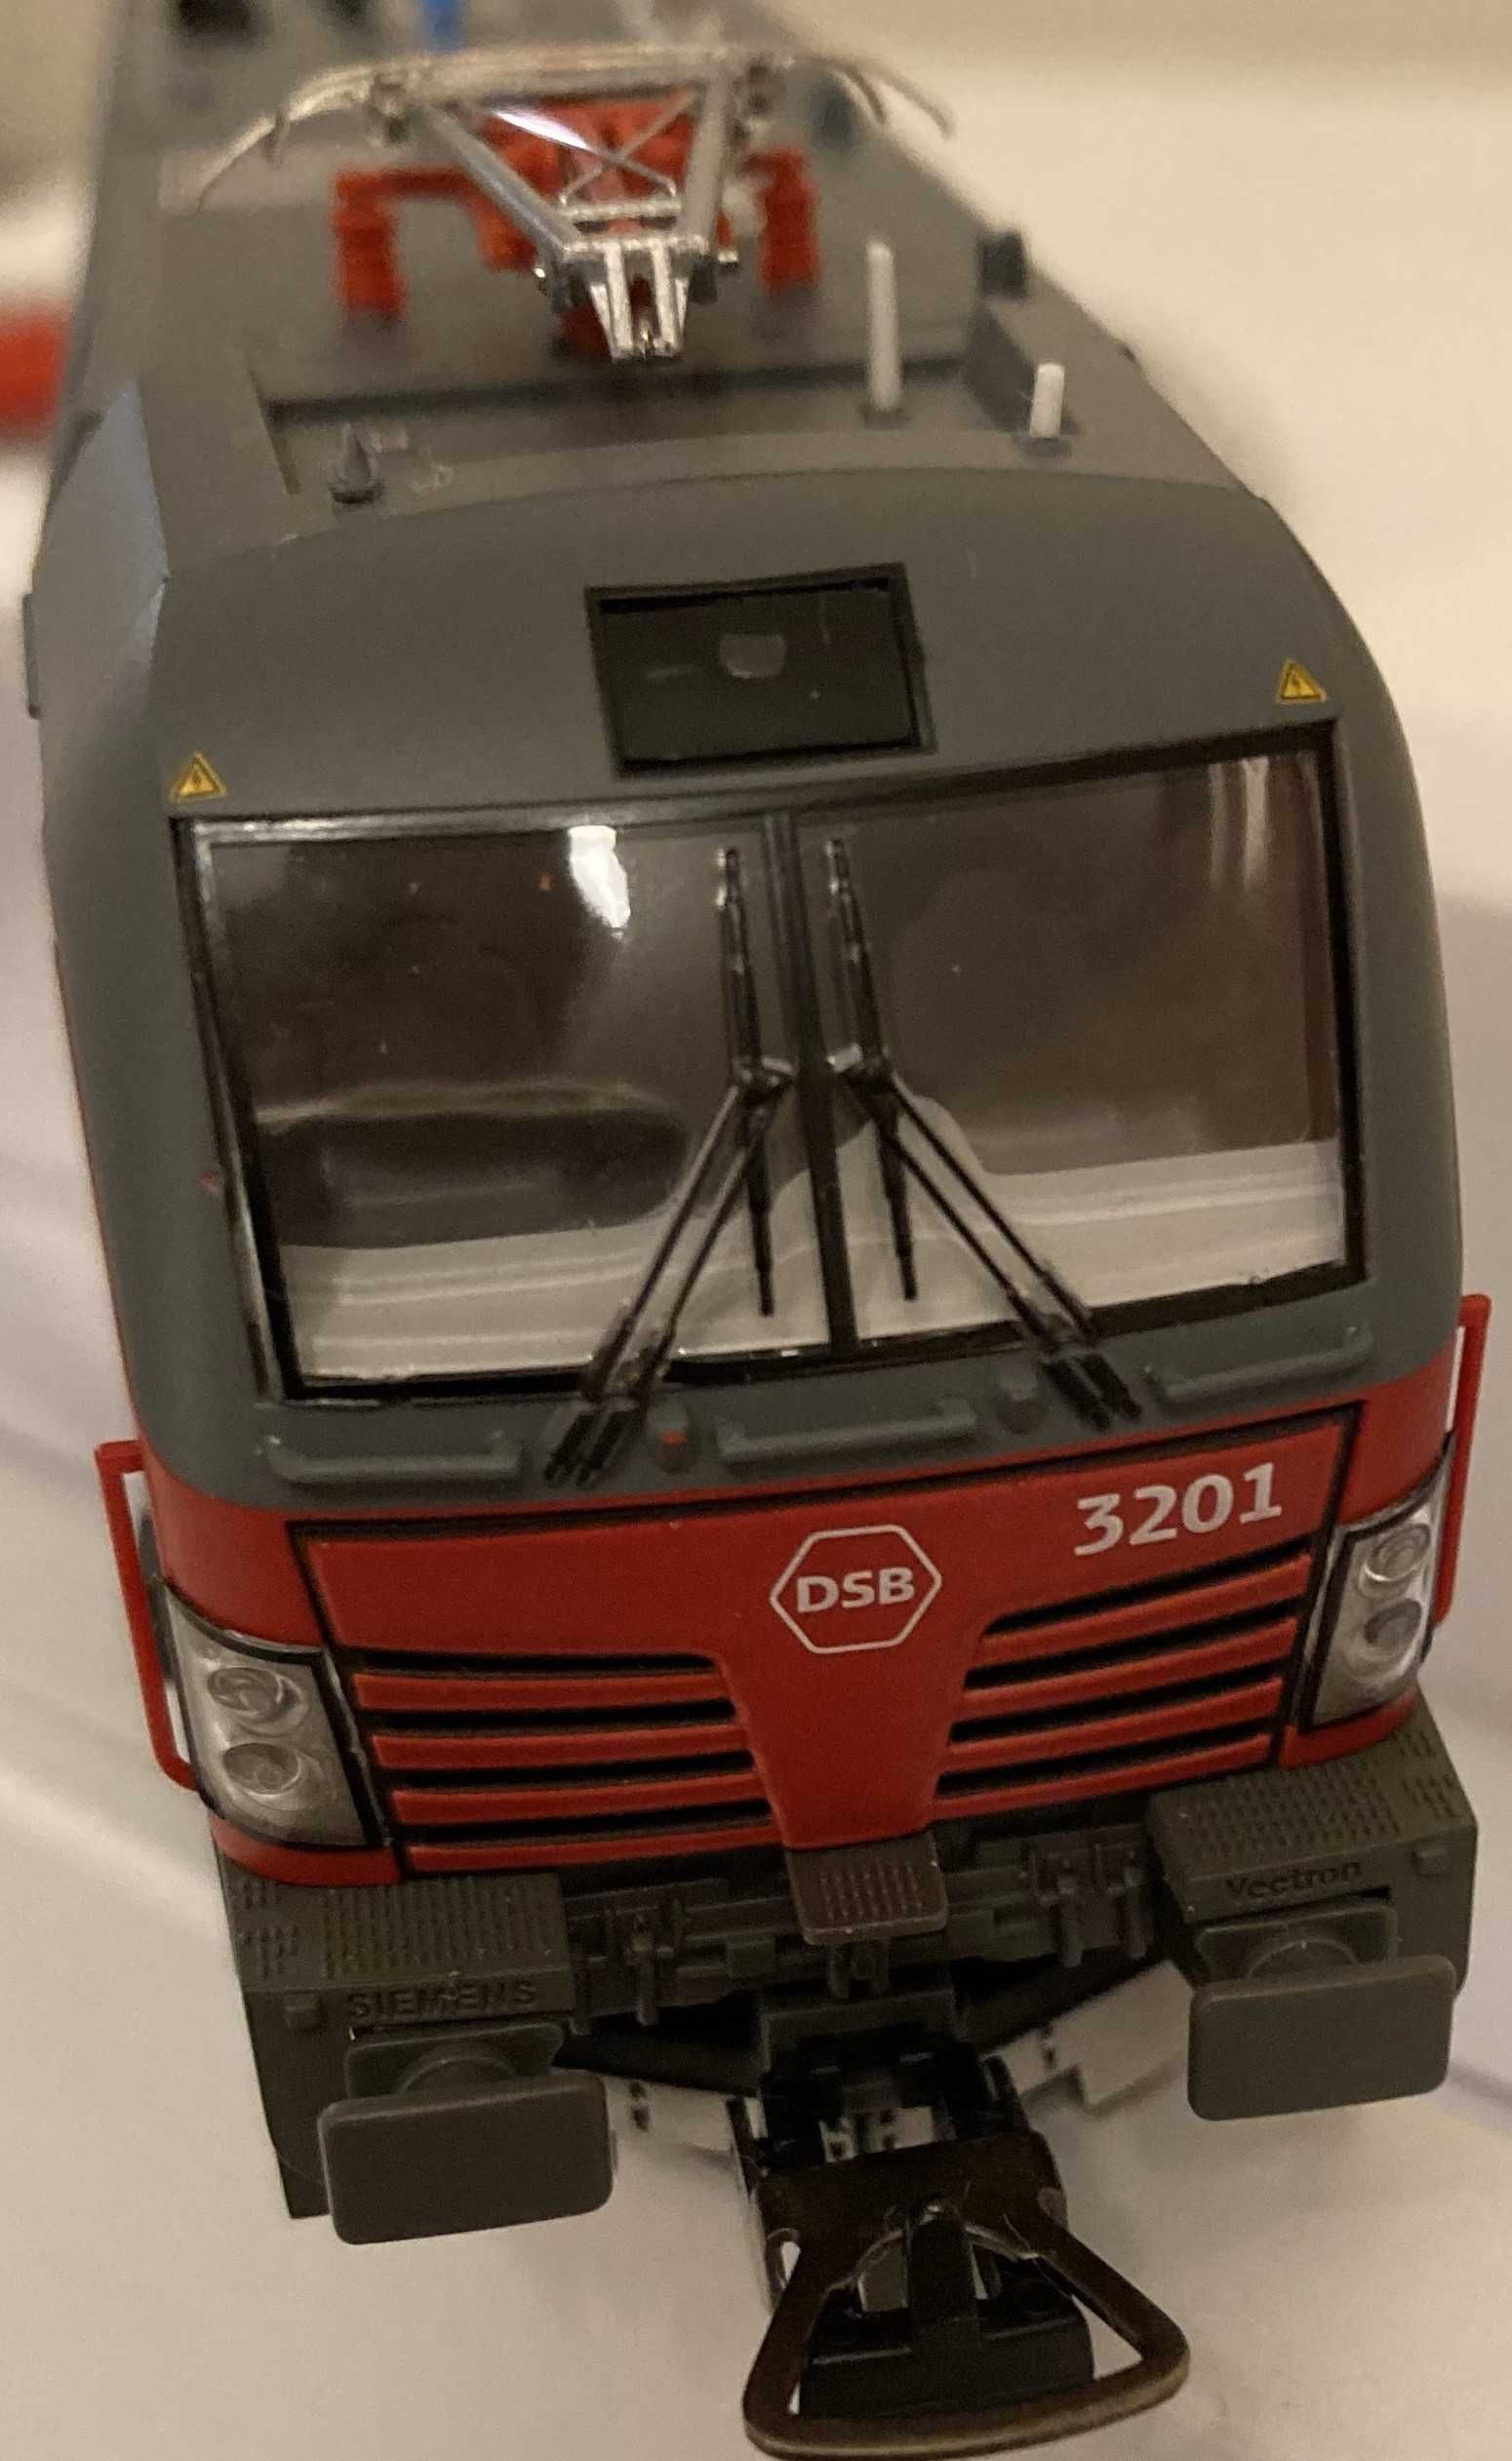 Locomotiva Piko DSB 3201, H0 (1:87)(Roco, Trix, Fleischmann)